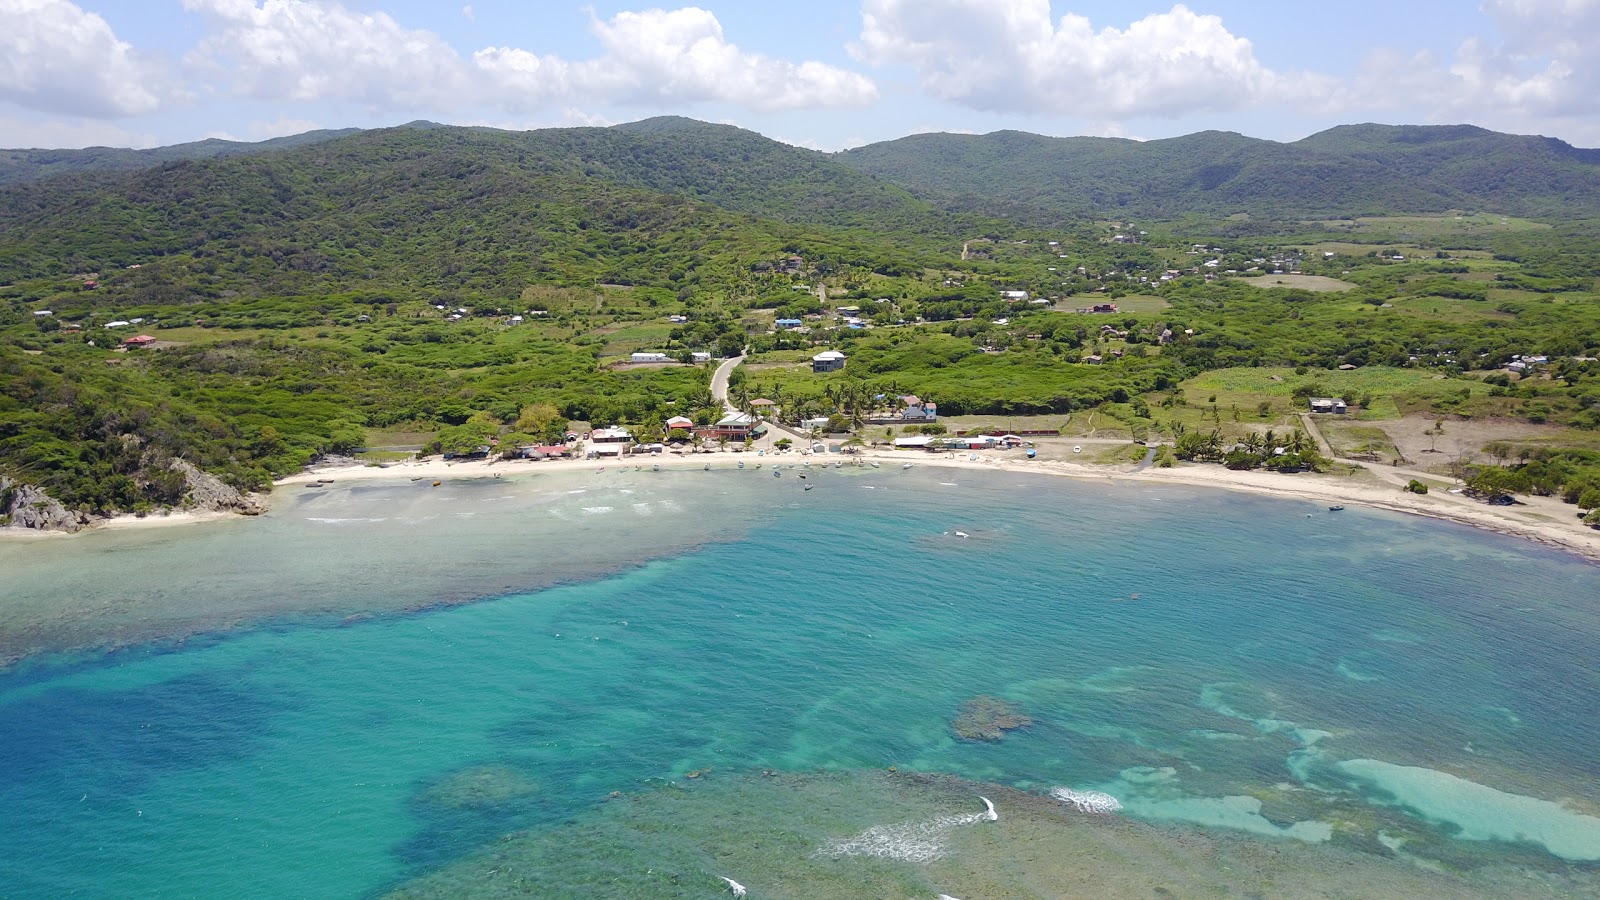 Foto af Playa Buen Hombre - populært sted blandt afslapningskendere